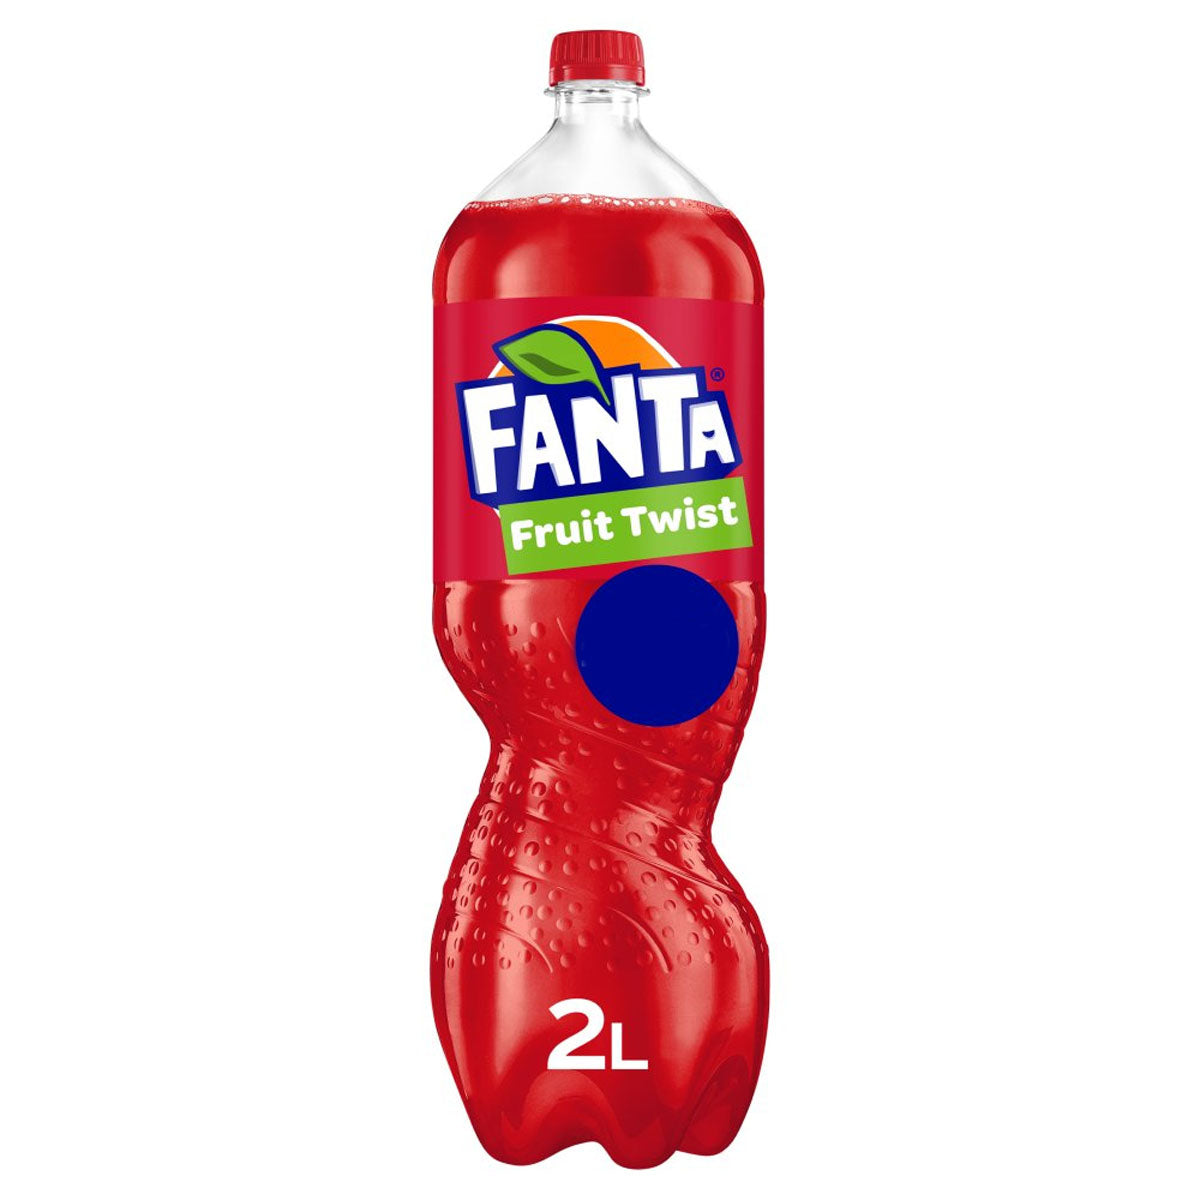 Fanta - Fruit Twist - 2L - Continental Food Store